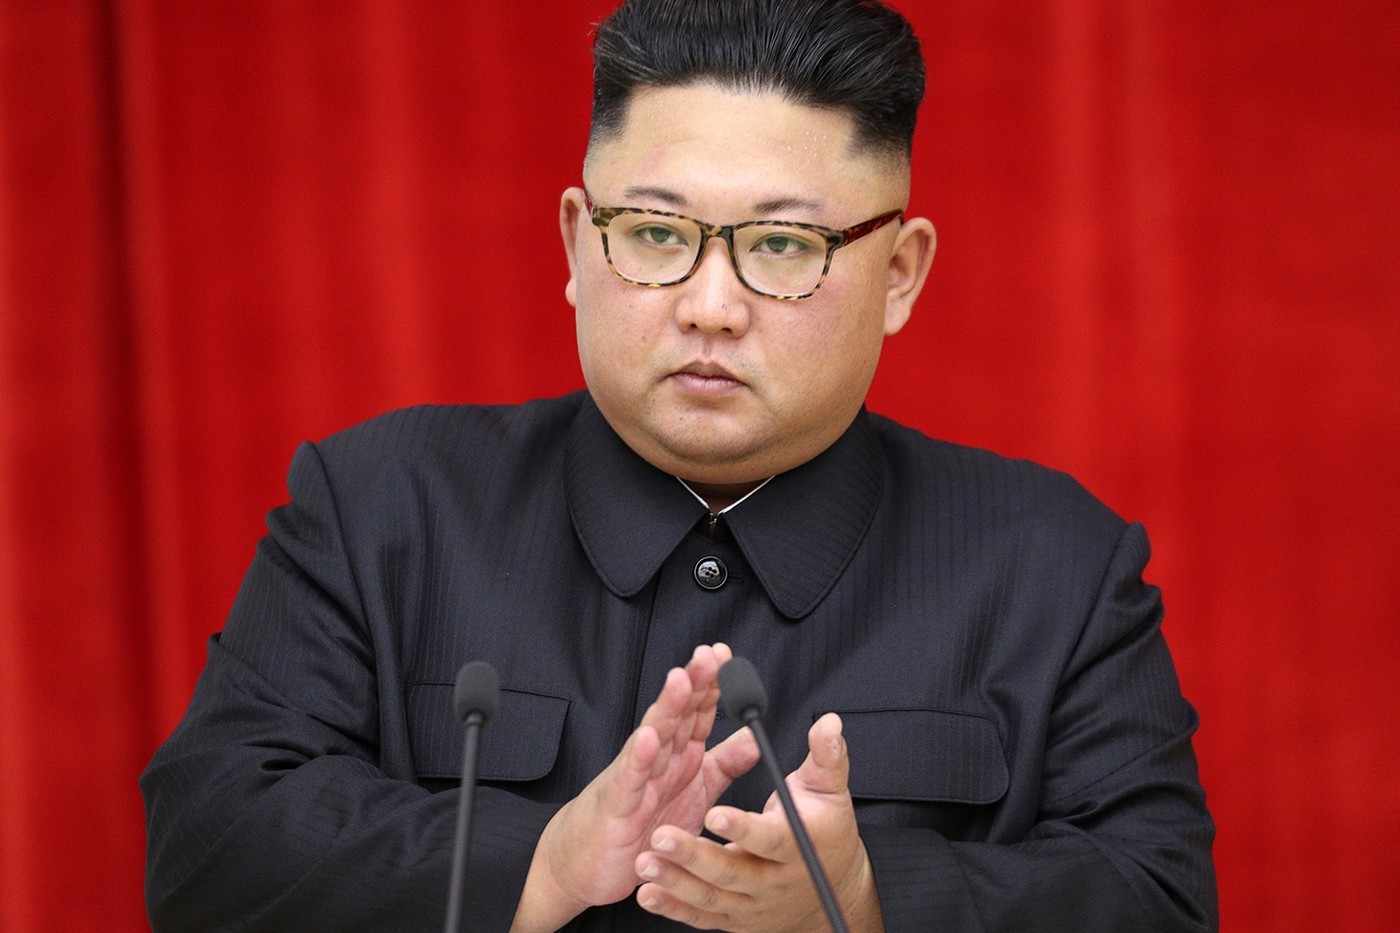 Лидер Северной Кореи запретил жителям страны носить джинсы скинни, потому что они олицетворяют «капиталистический образ жизни»